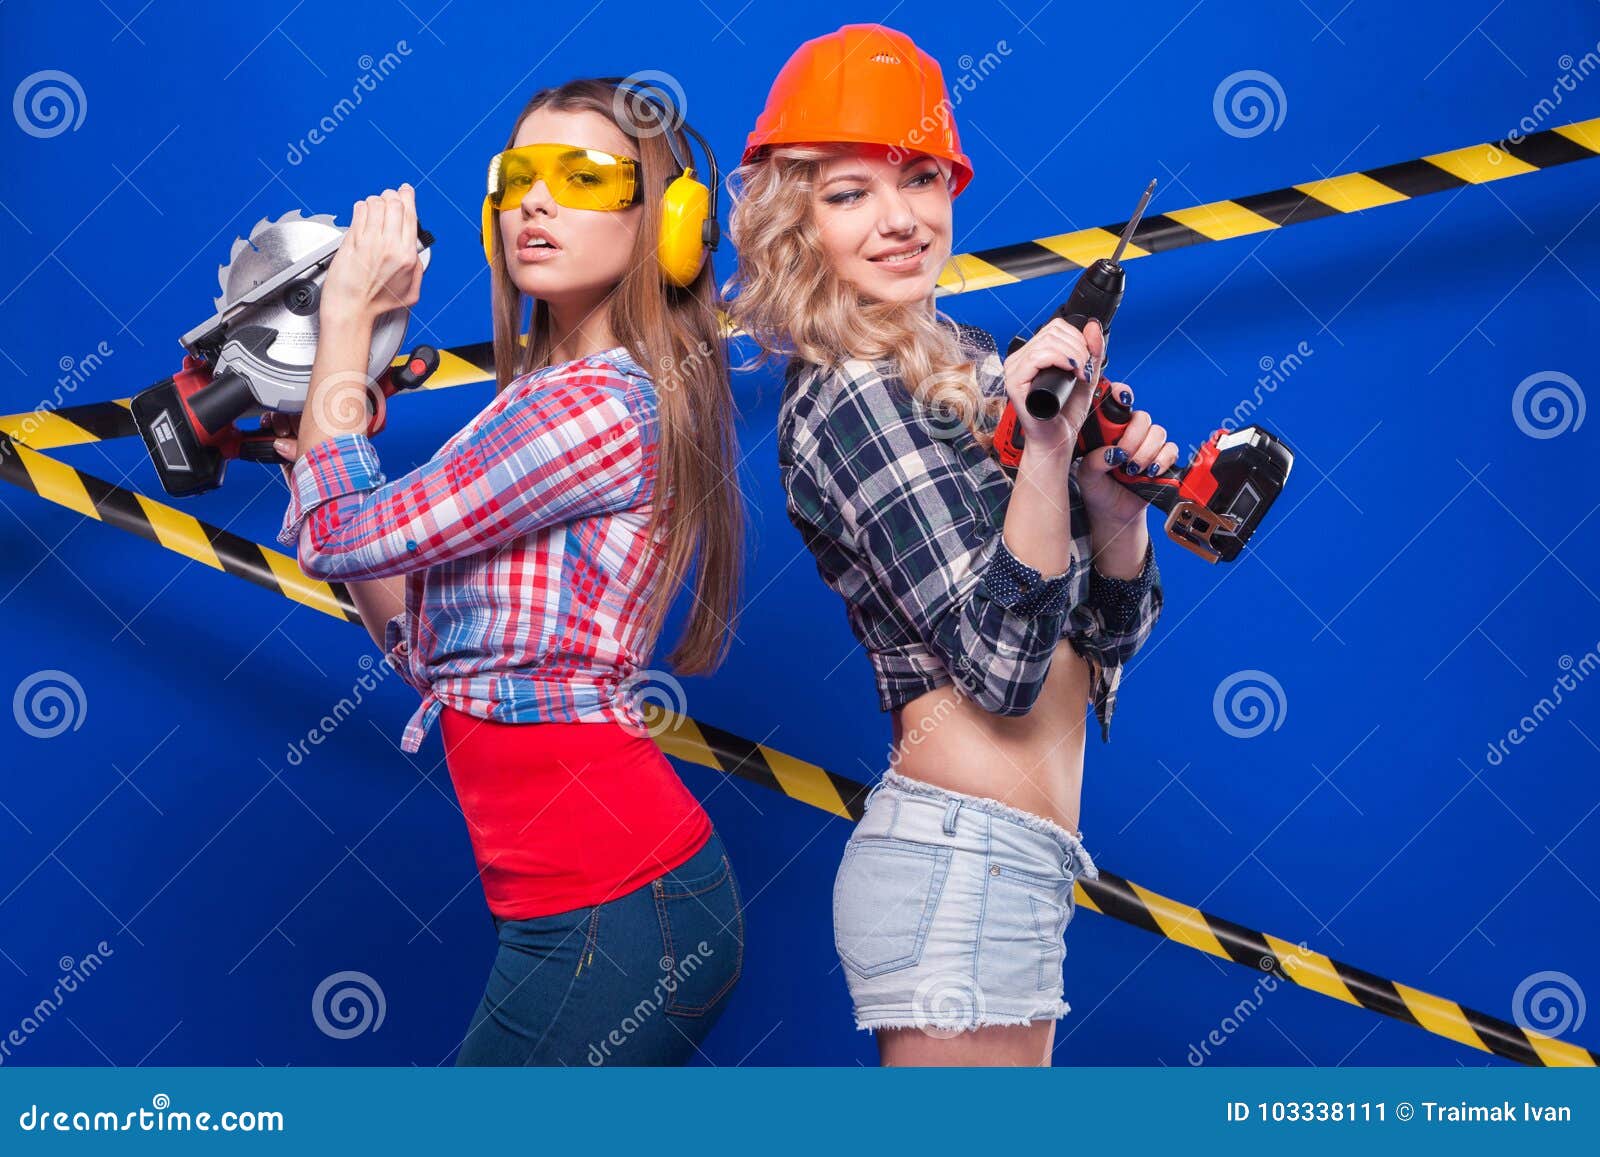 Builder girls – Telegraph